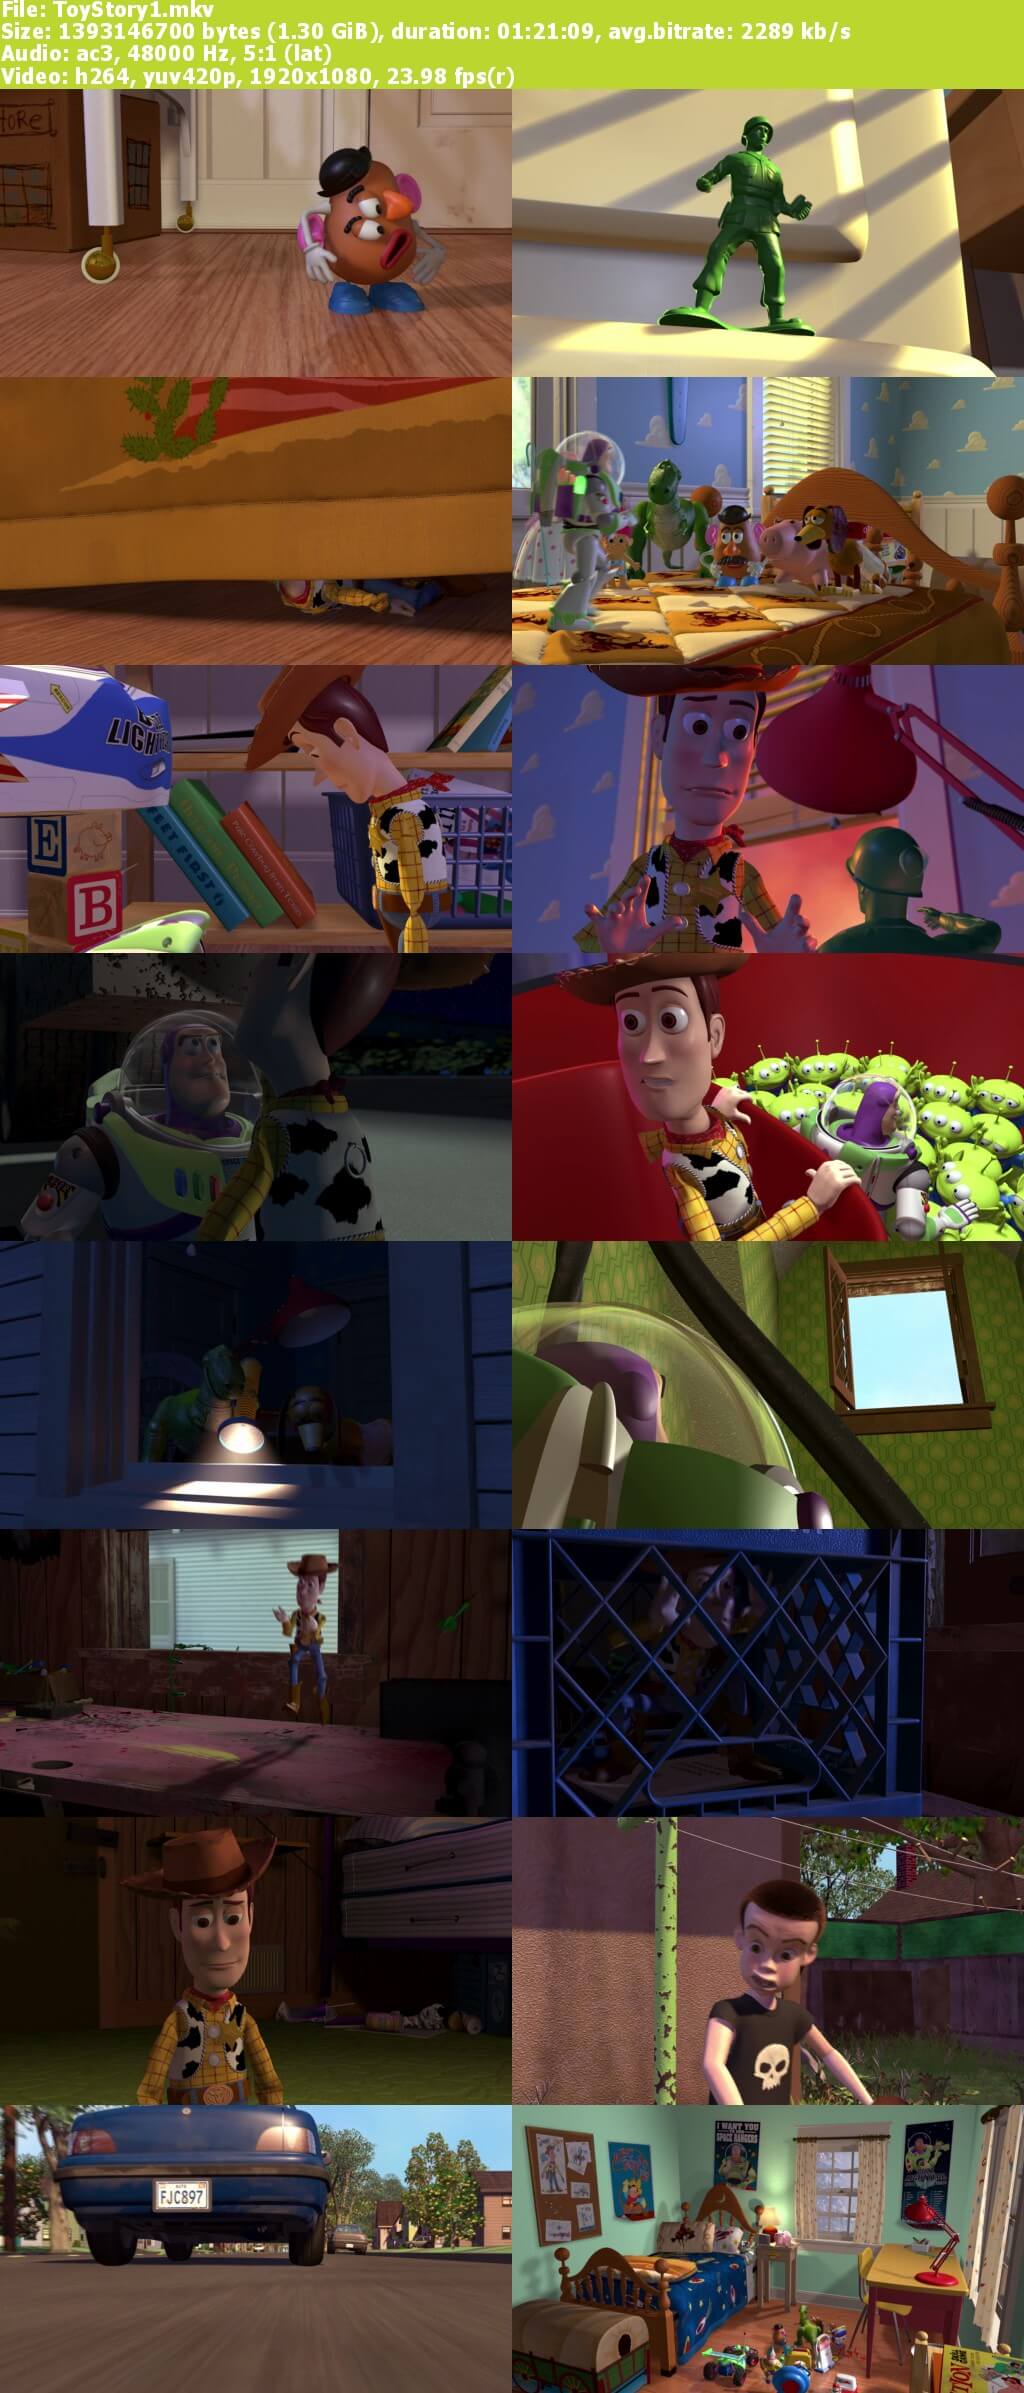 Toy Story Trilogía 720p Latino